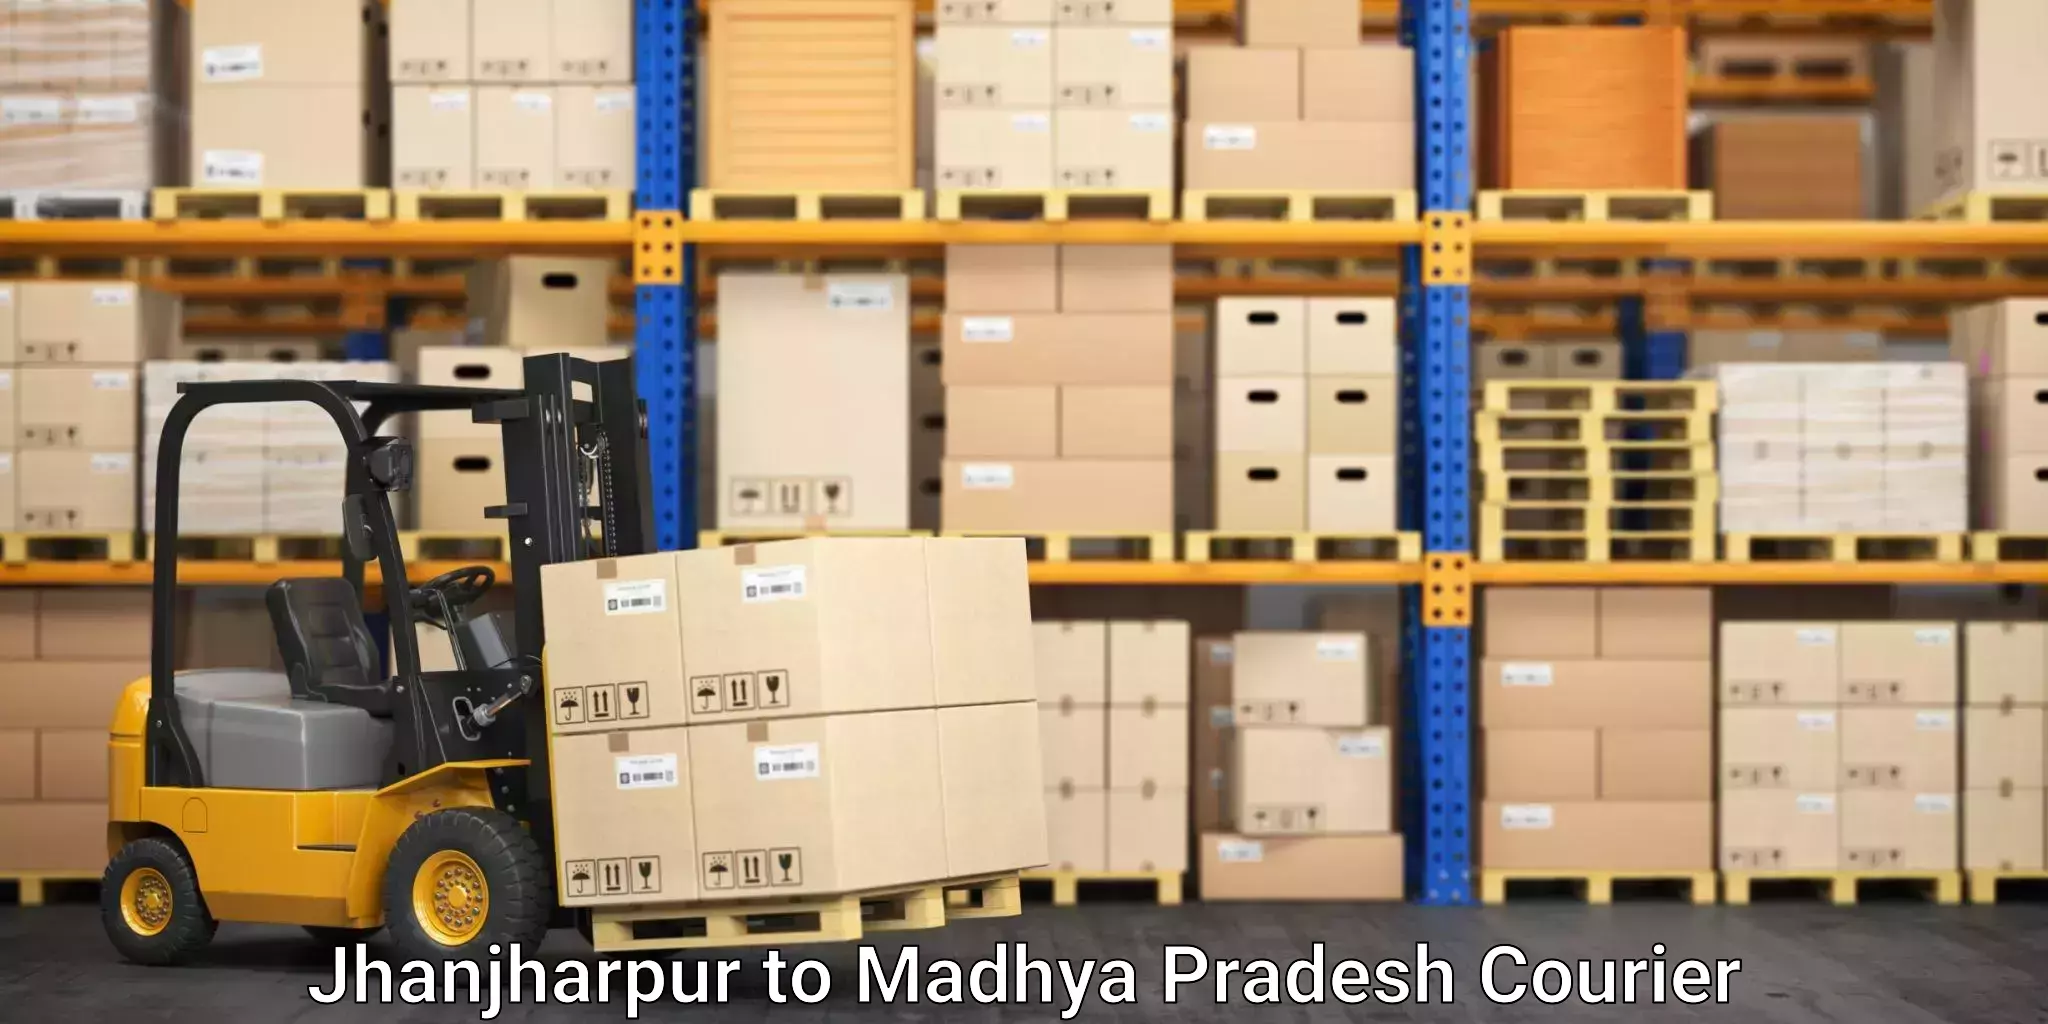 Furniture transport solutions Jhanjharpur to Niwari